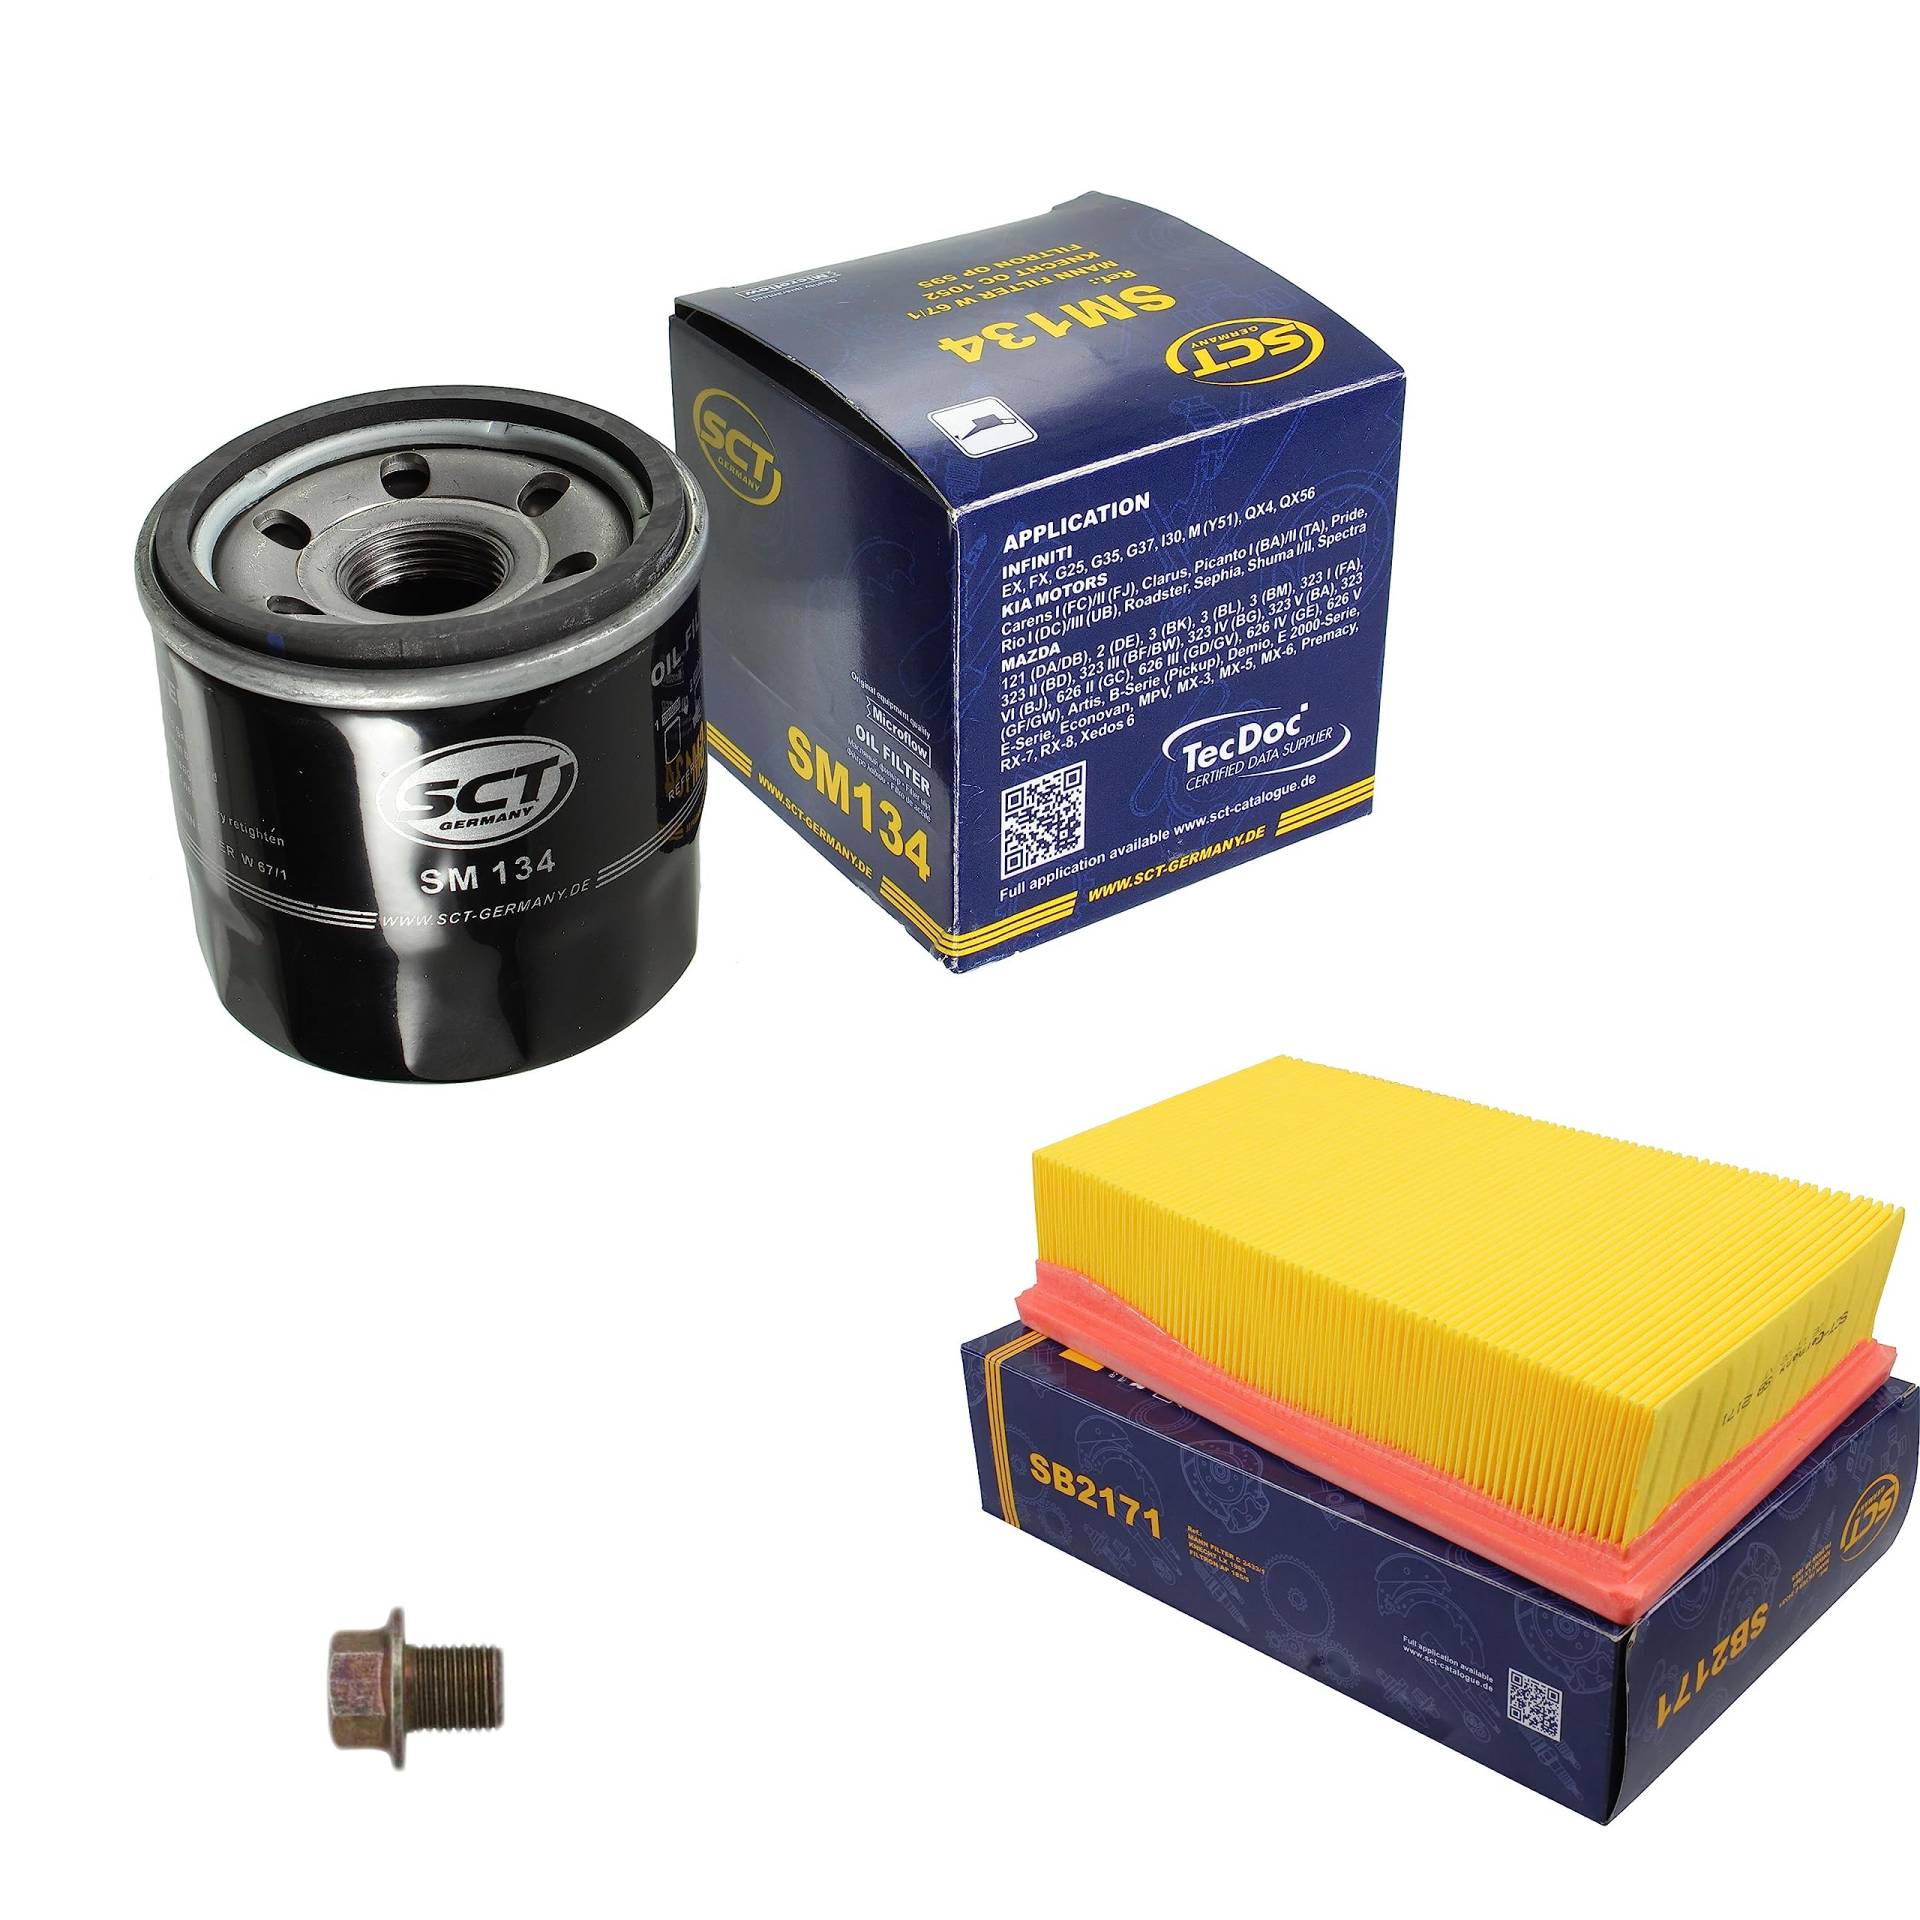 Inspektionspaket Wartungspaket Filterset mit Ölfilter SM 134, Luftfilter SB 2171, Verschlussschraube von EISENFELS